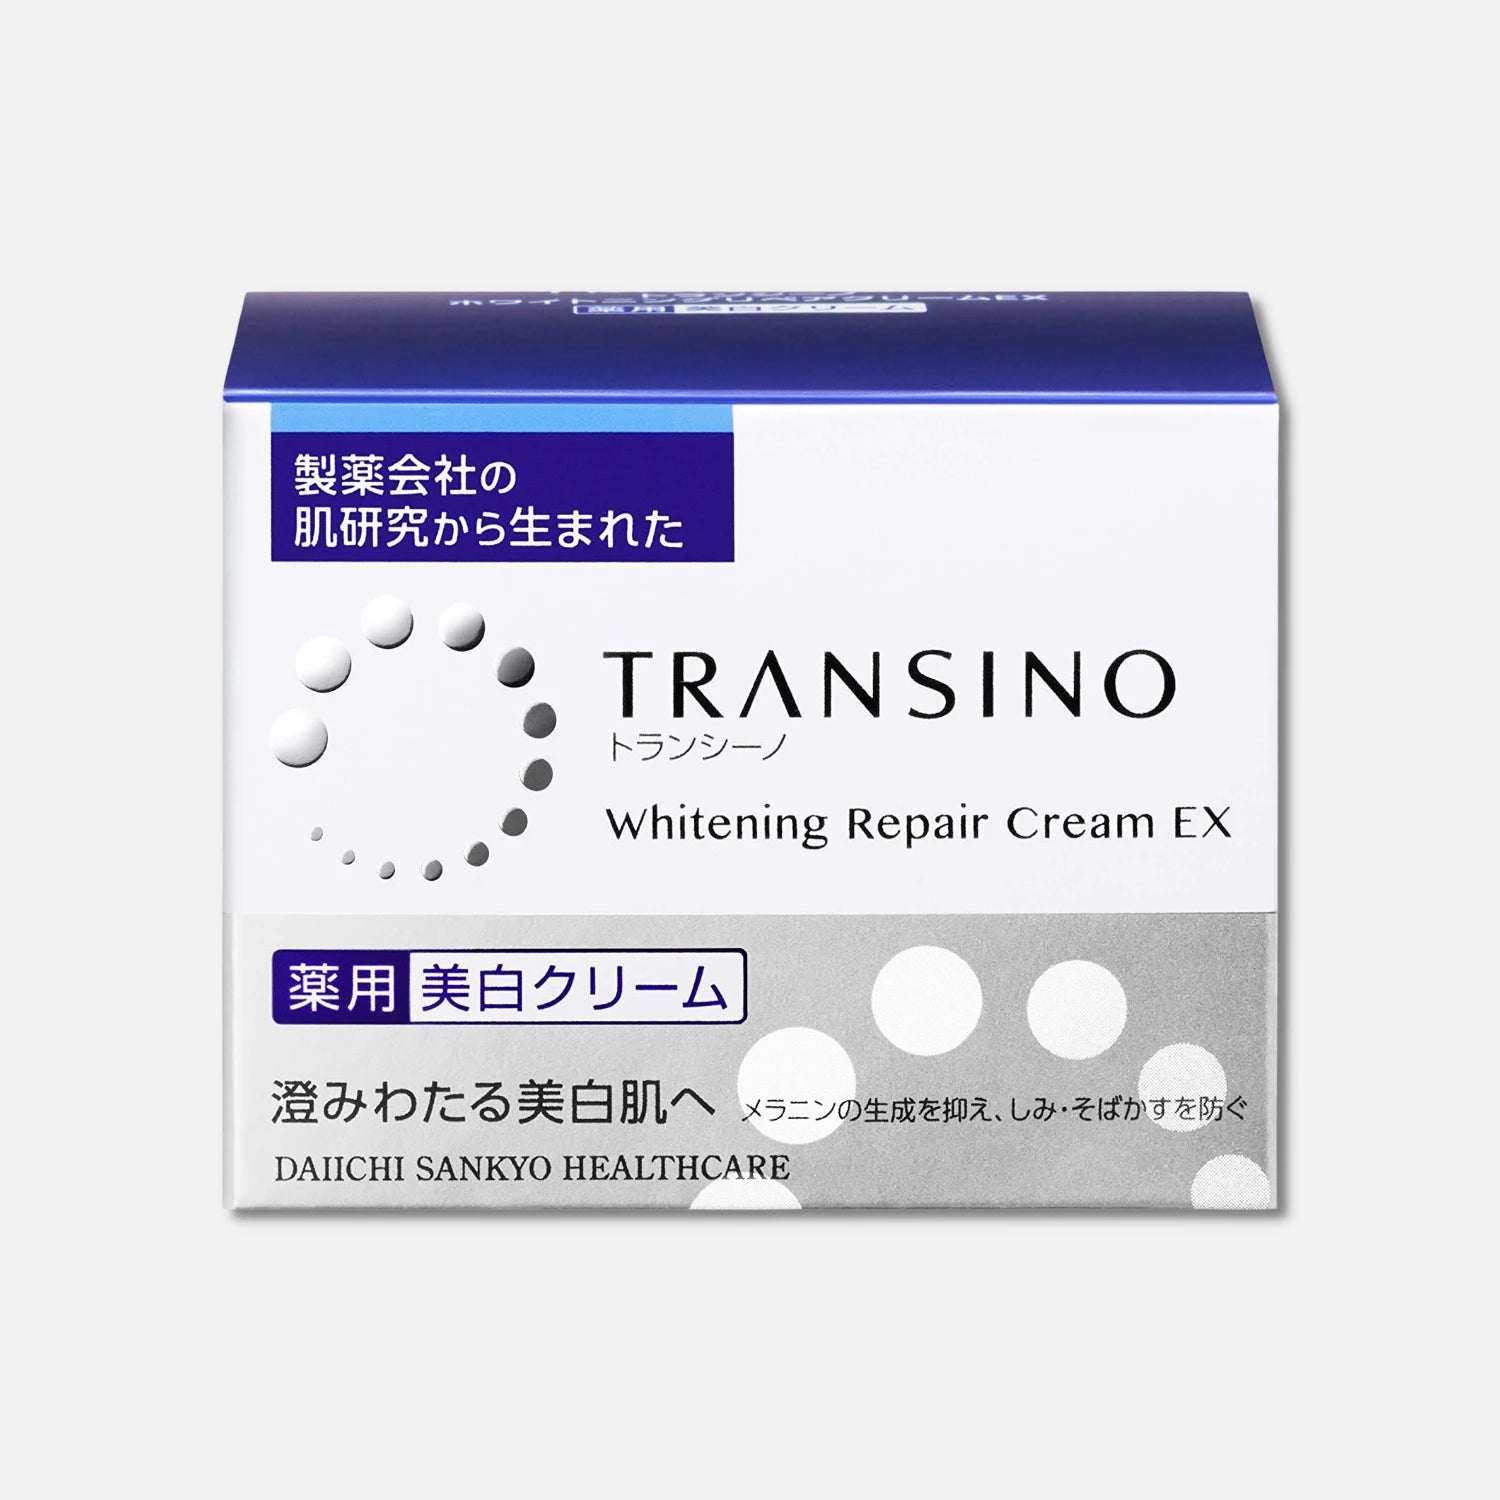 Transino Whitening Repair Cream EX 35g - Buy Me Japan